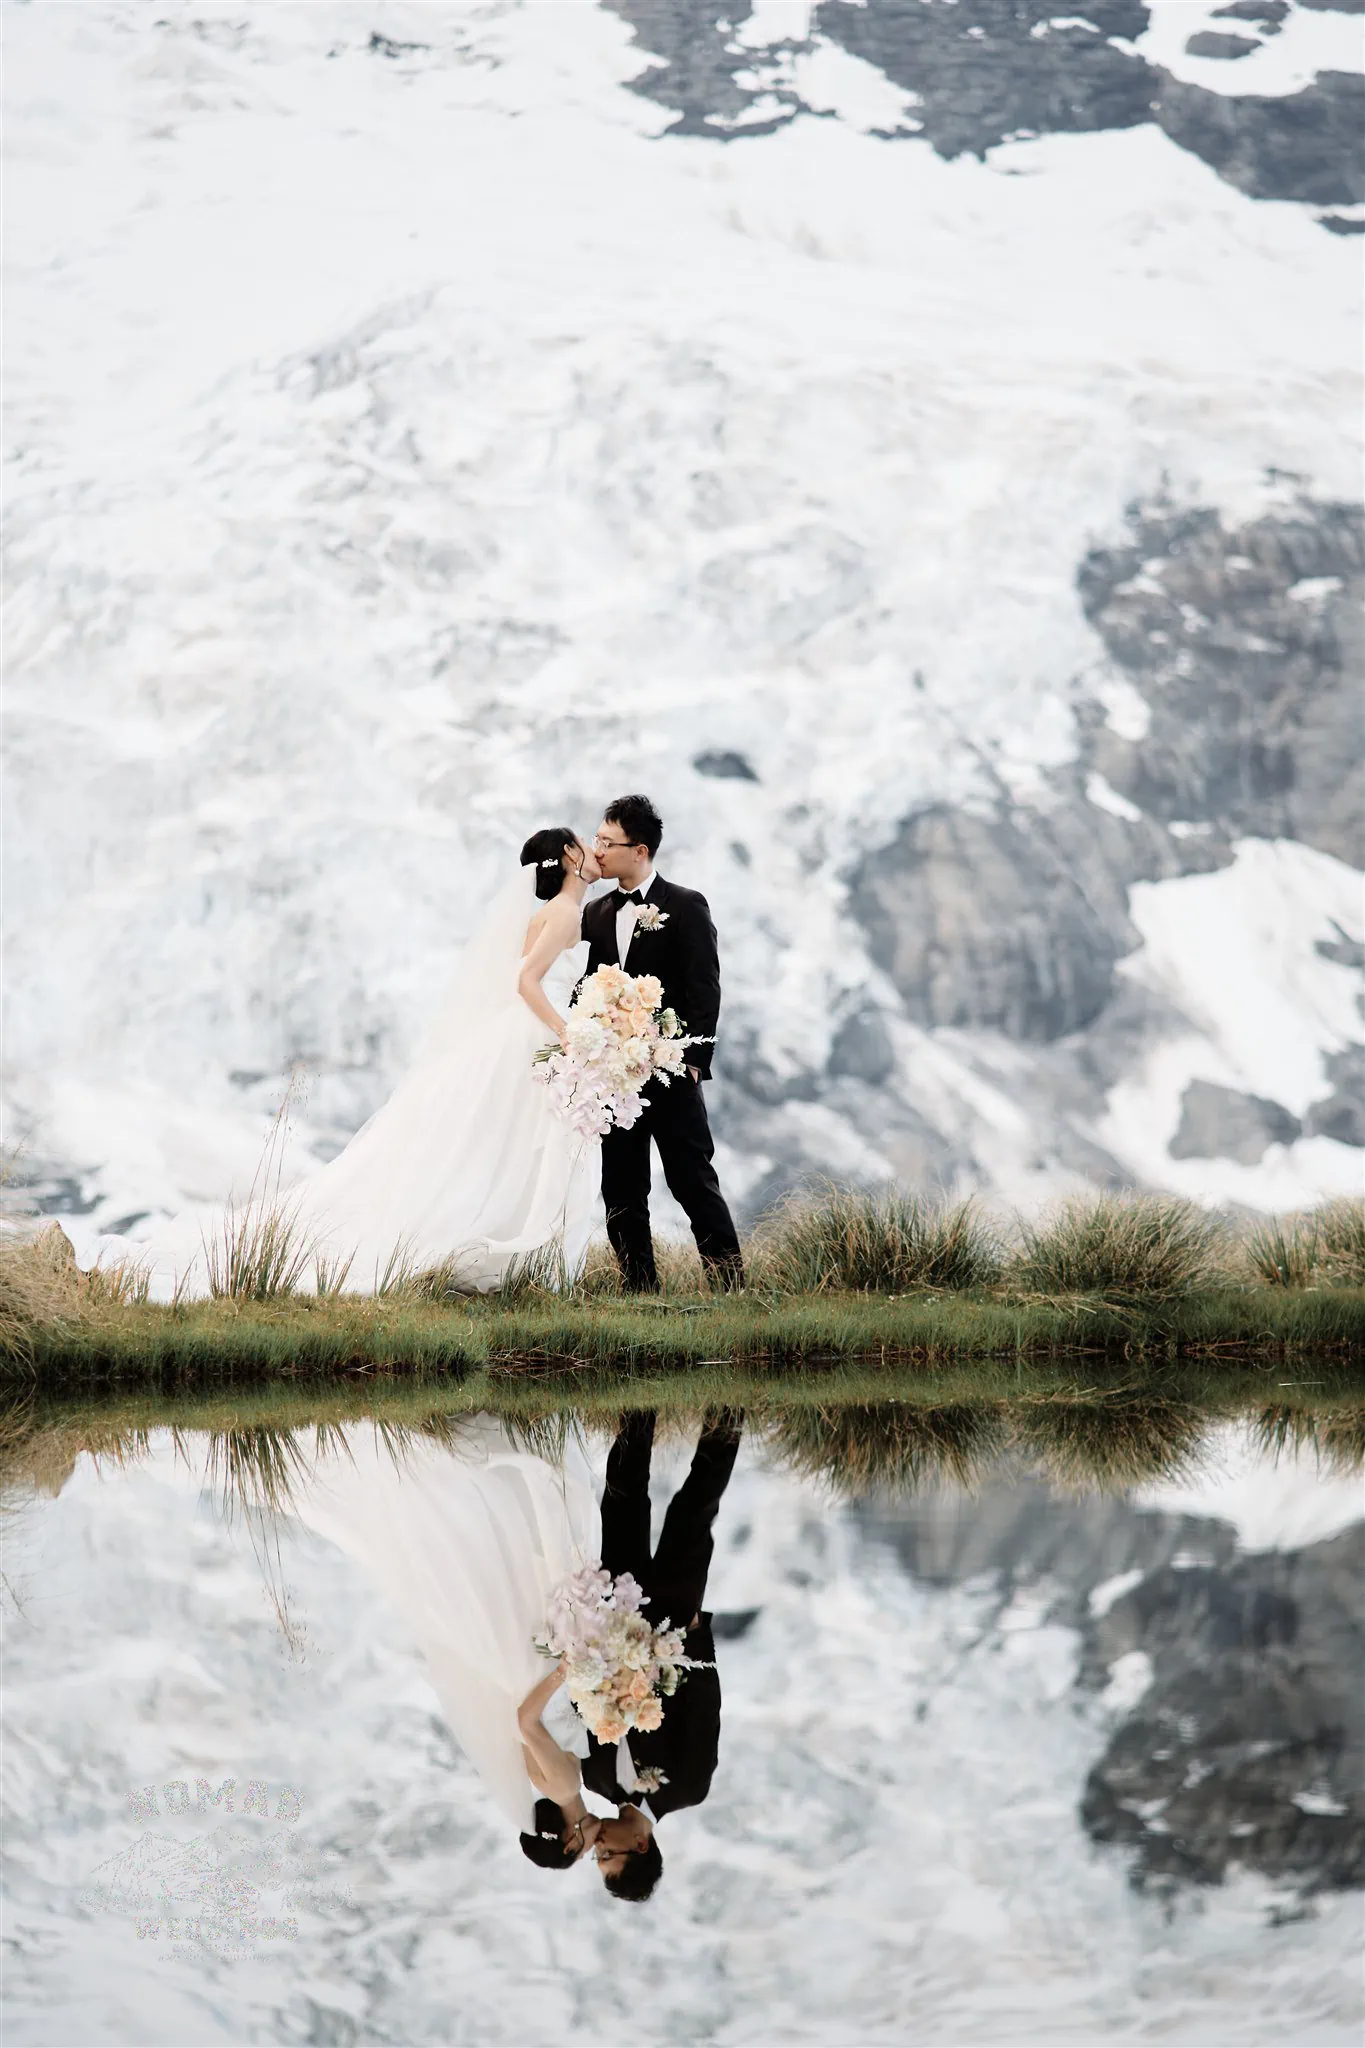 Queenstown New Zealand Lake Erskine Heli Elopement Wedding Elopement Wedding Photographer Coromandel Peak jpg.
